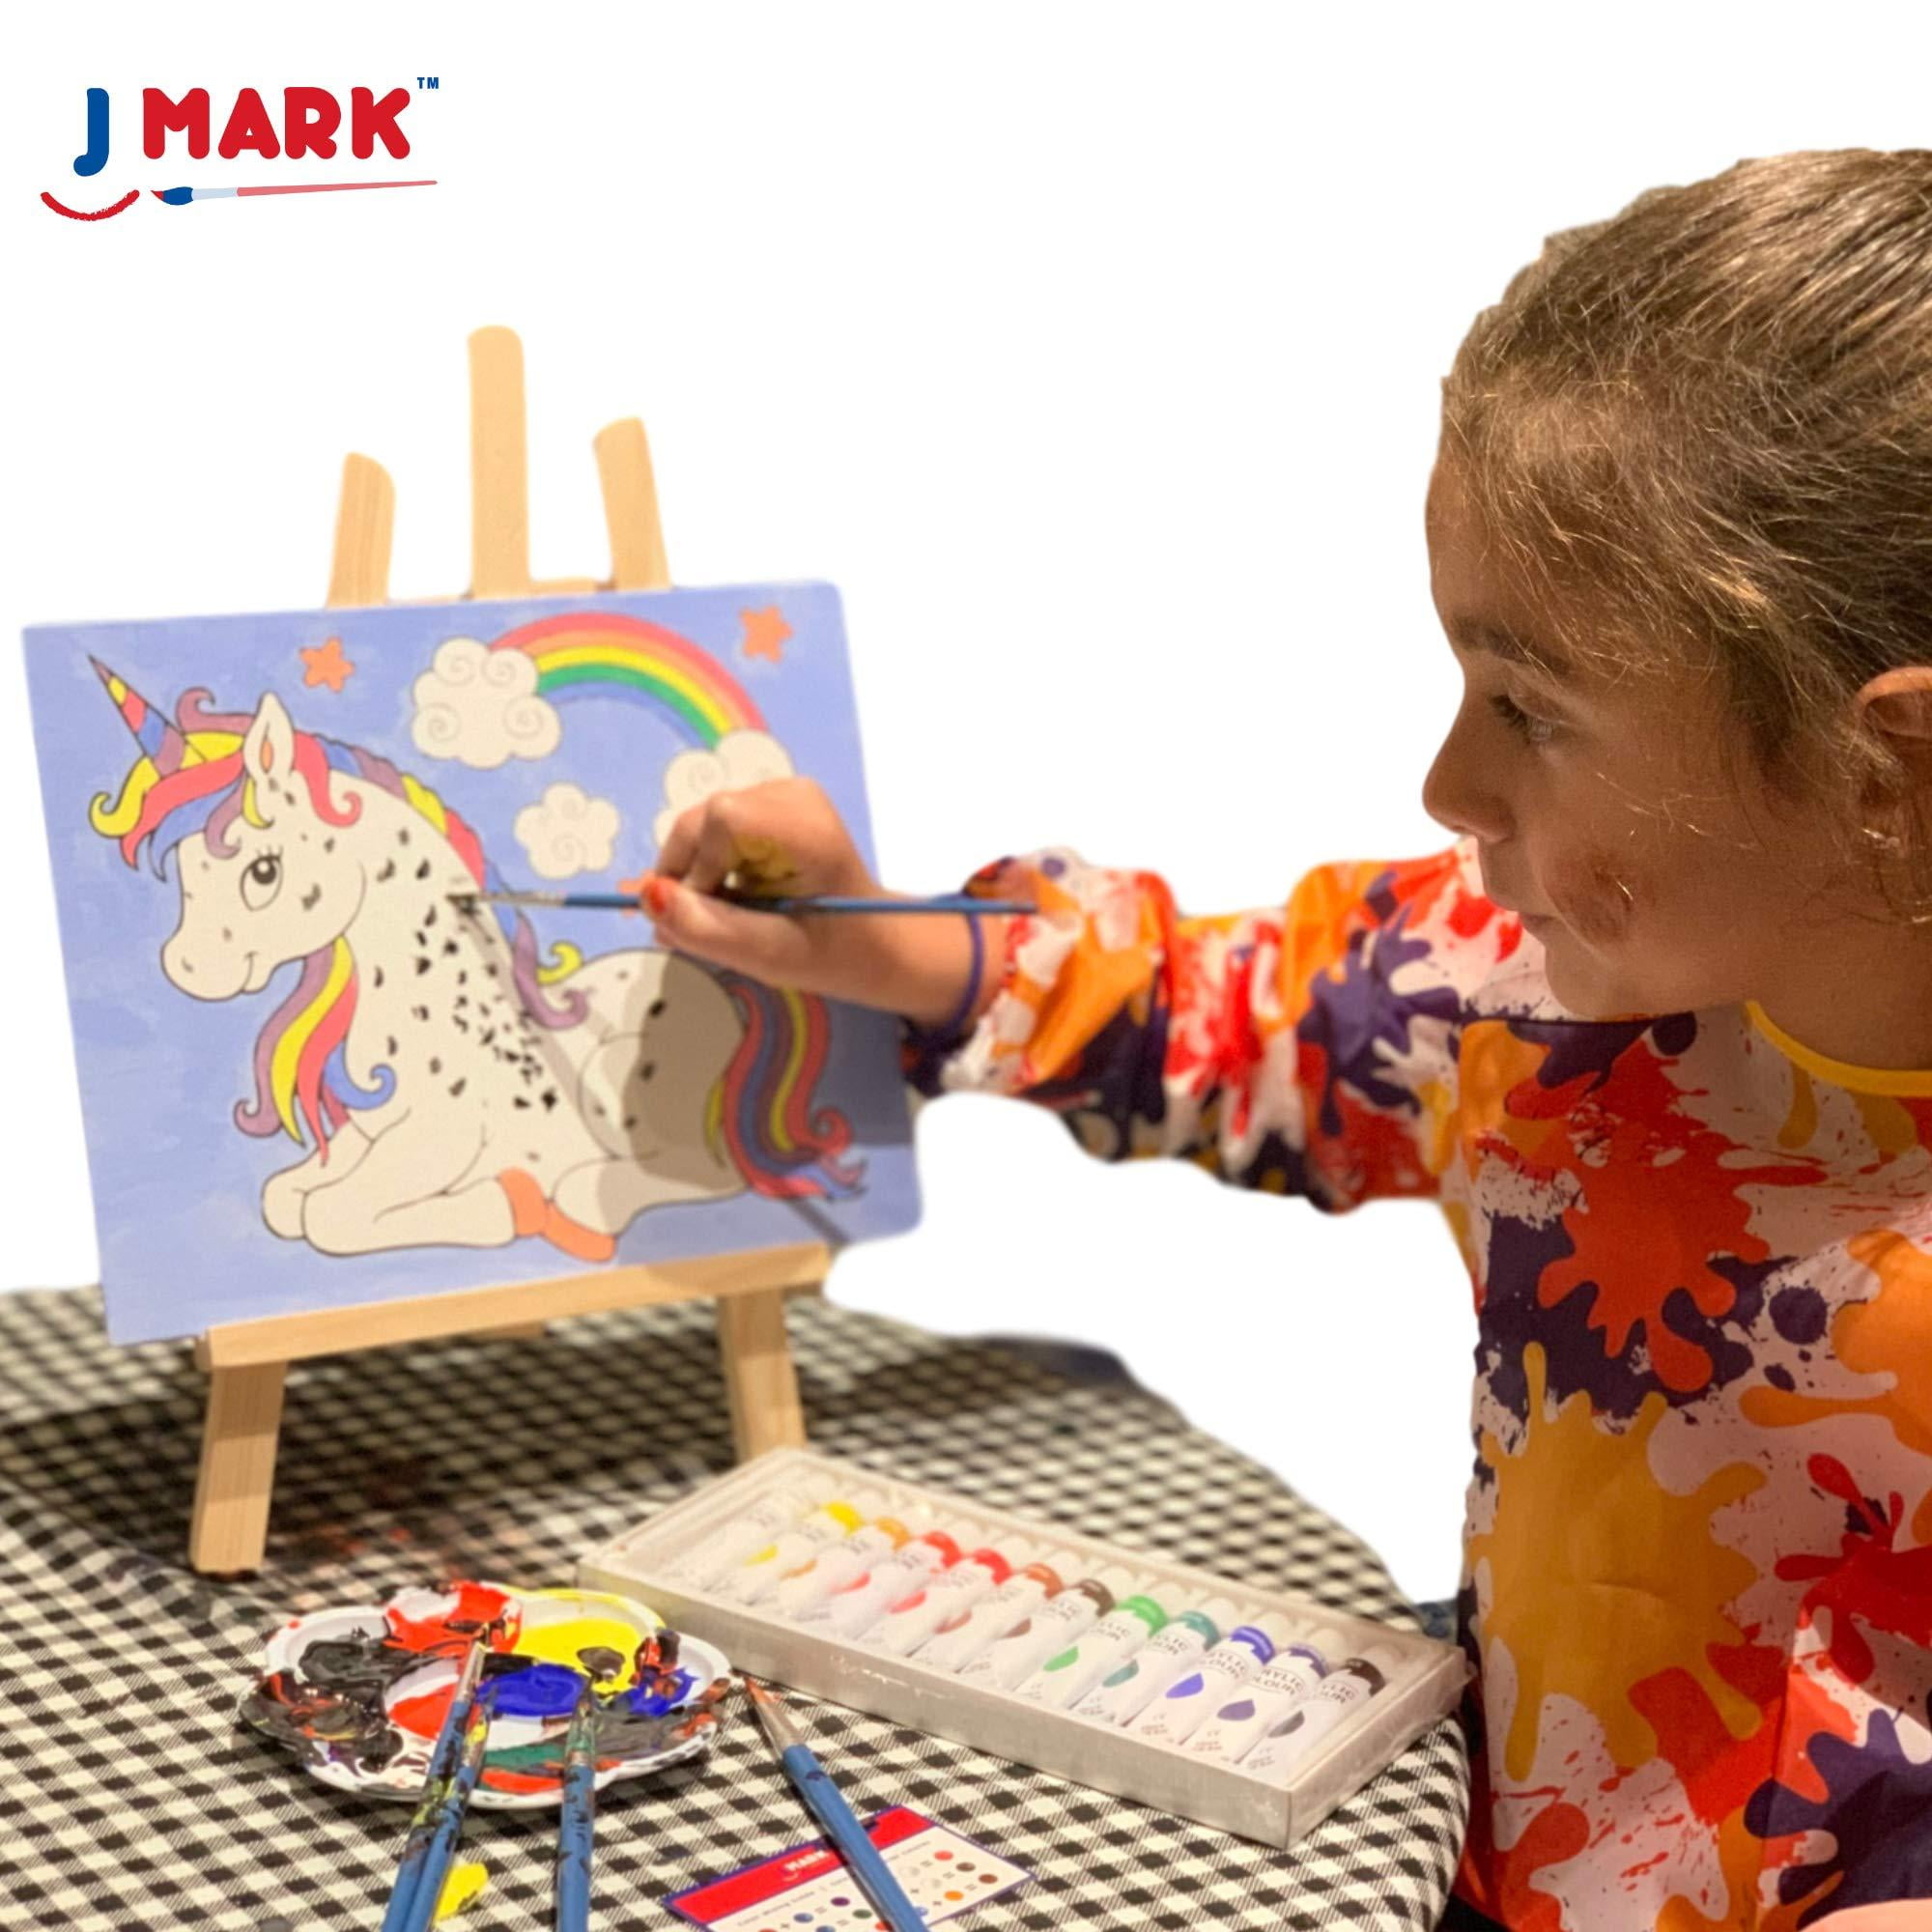 J MARK Kit de pintura, juego de 22 piezas de lona acrílico con